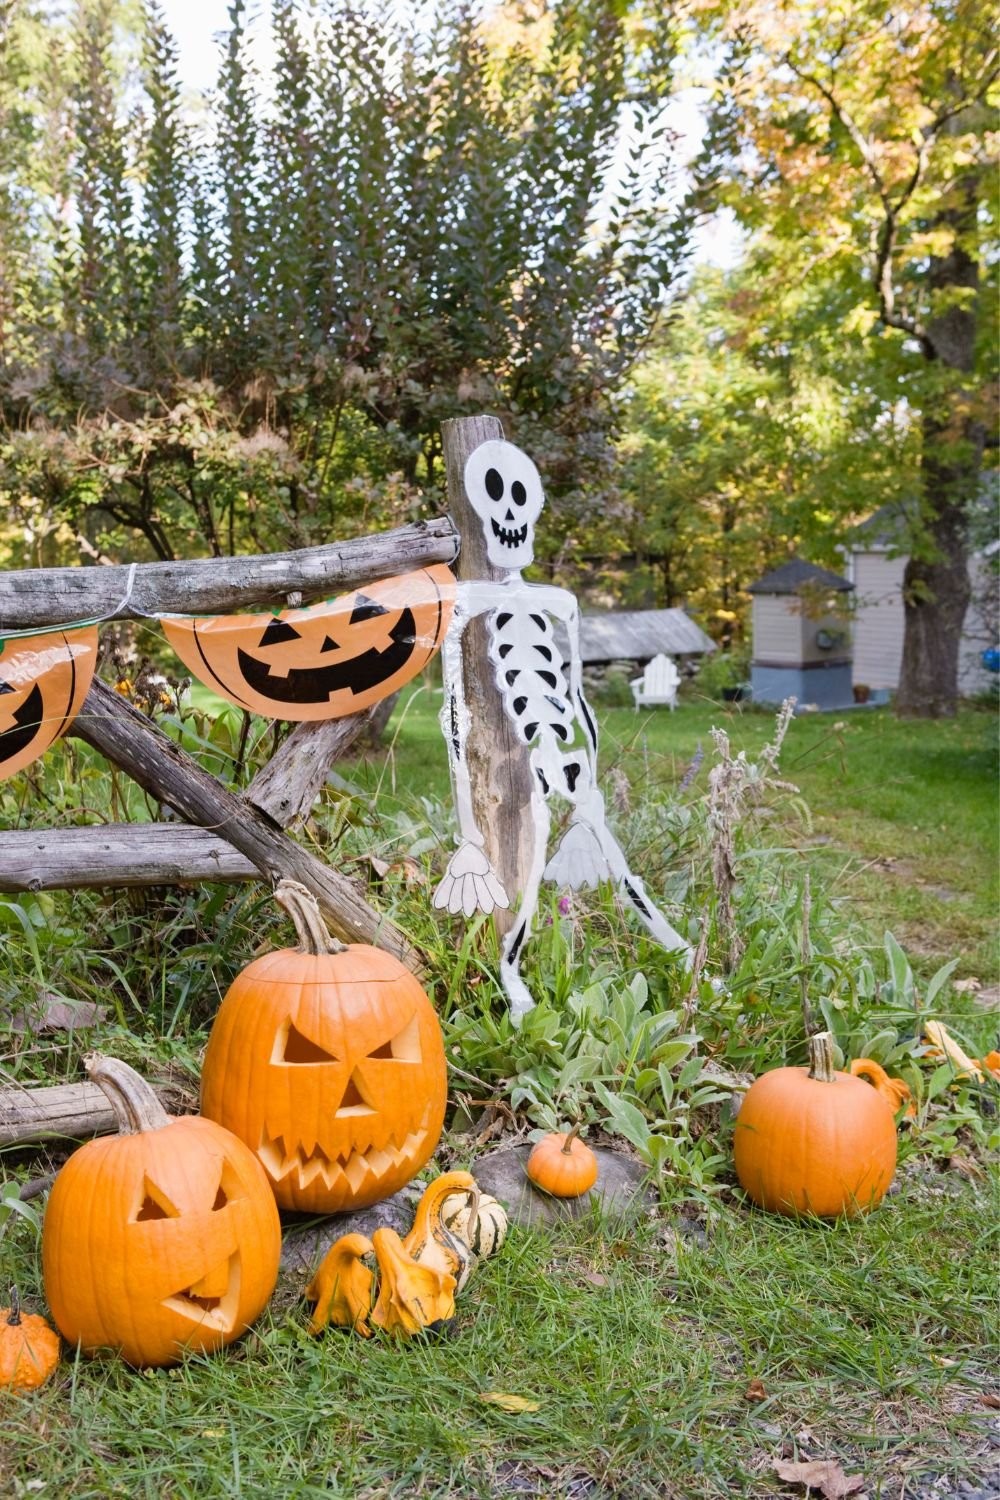 Skeleton and Carved Pumpkins